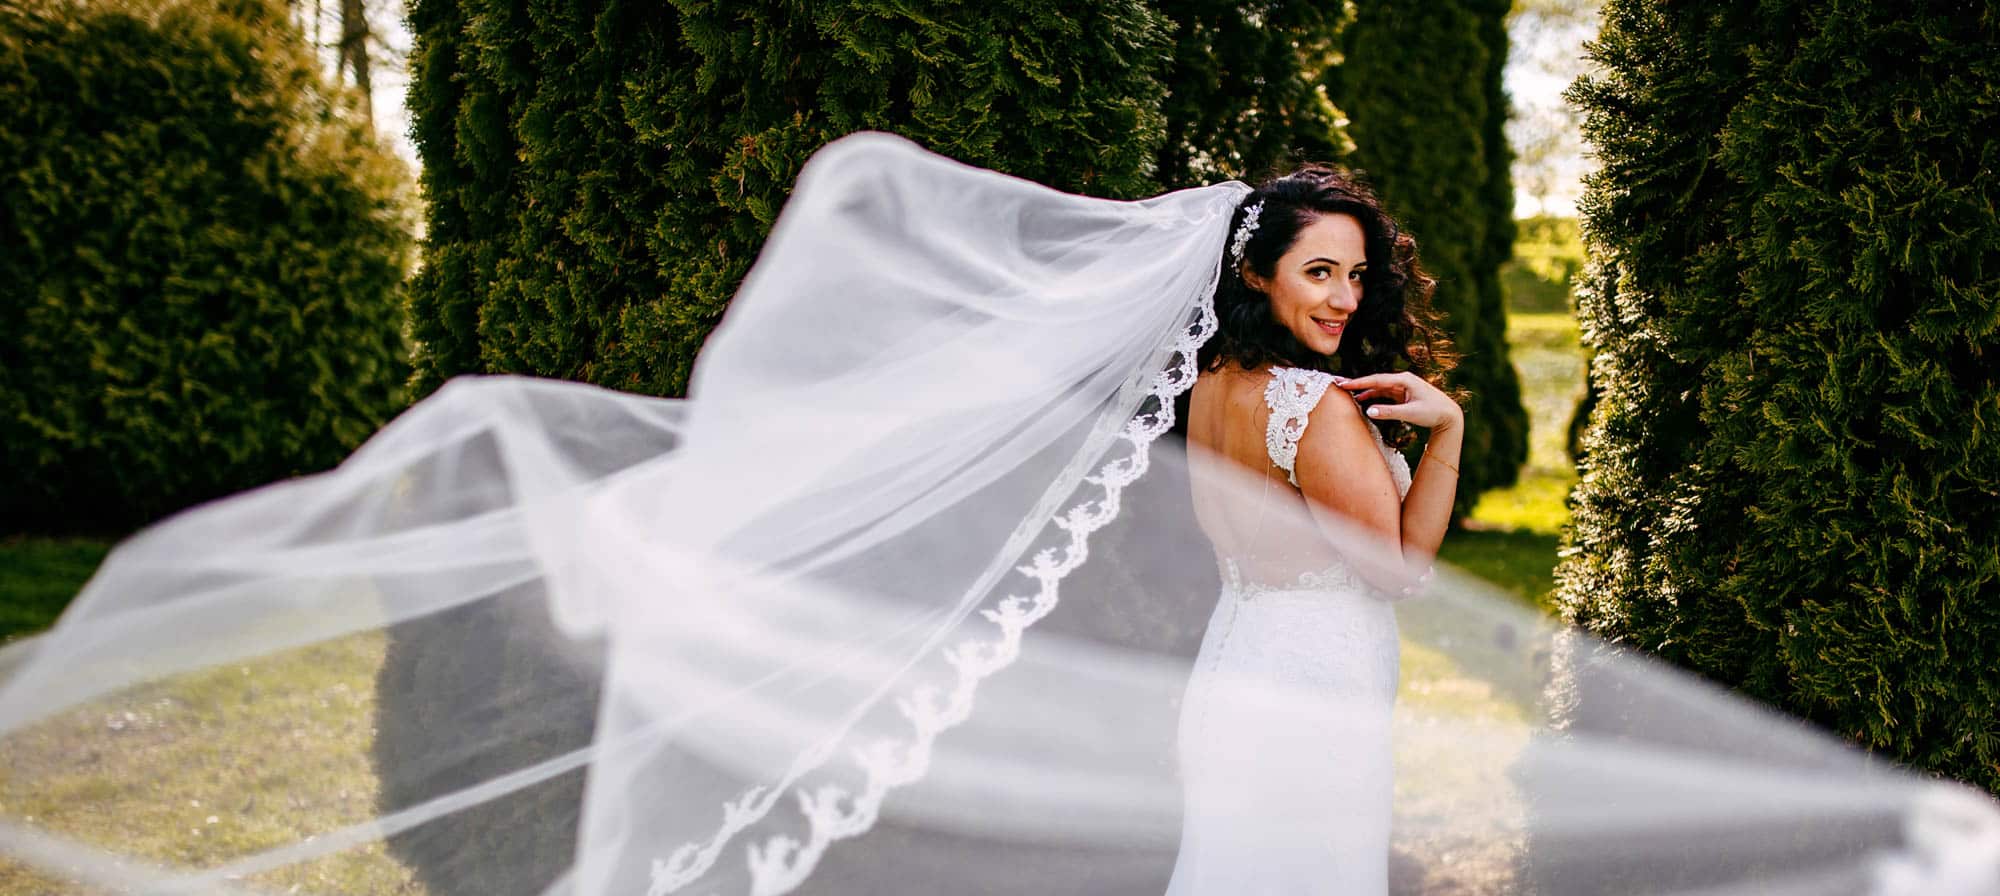 Een bruid in haar trouwjurk met haar sluier wapperend in de wind.